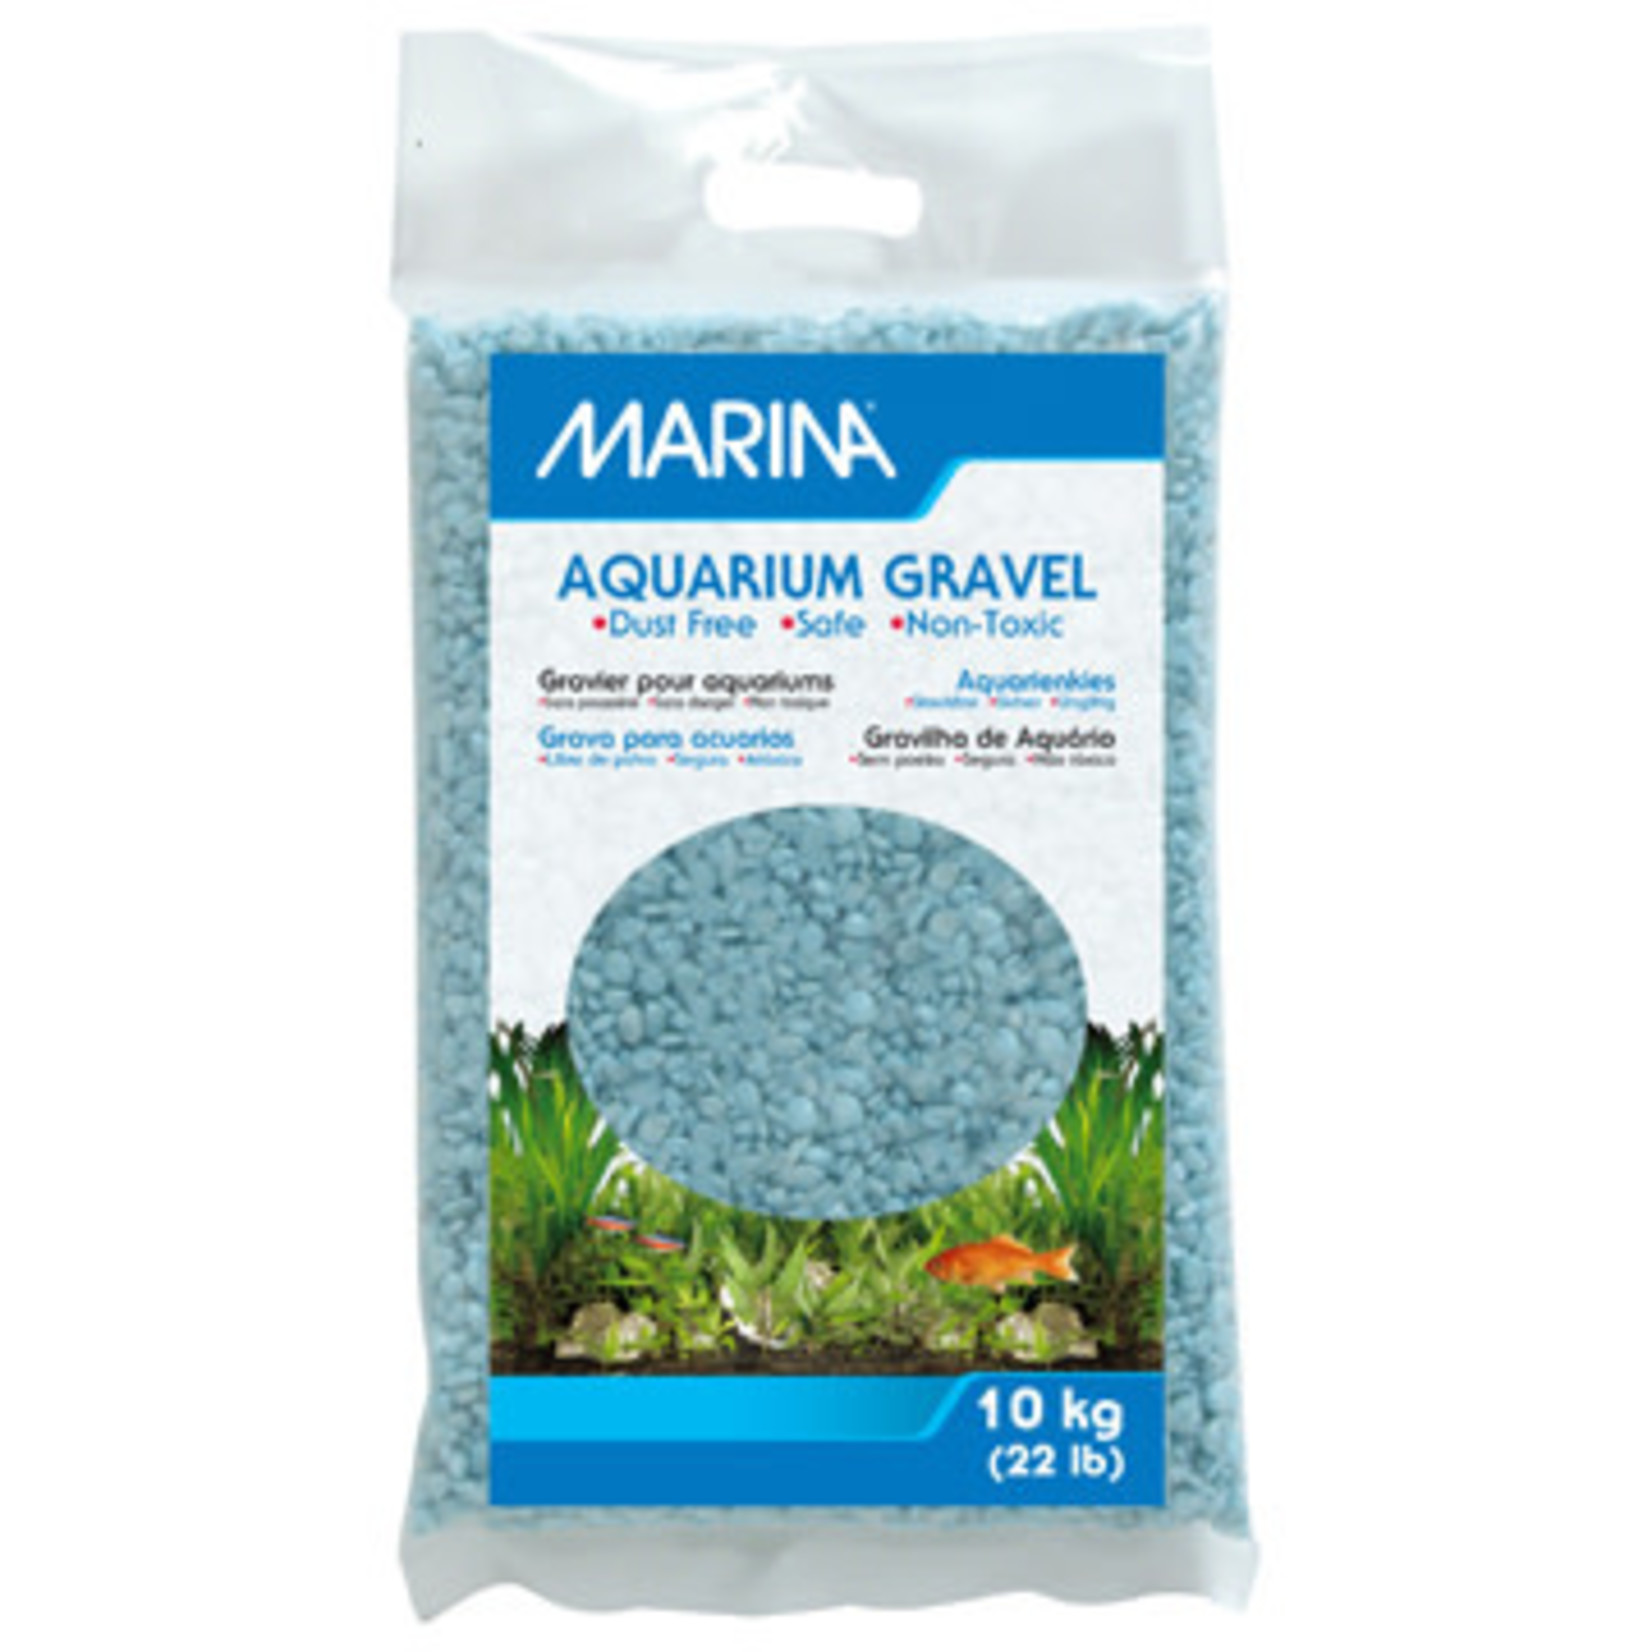 MARINA Marina Surf Decorative Aquarium Gravel - 10 kg (22 lbs)